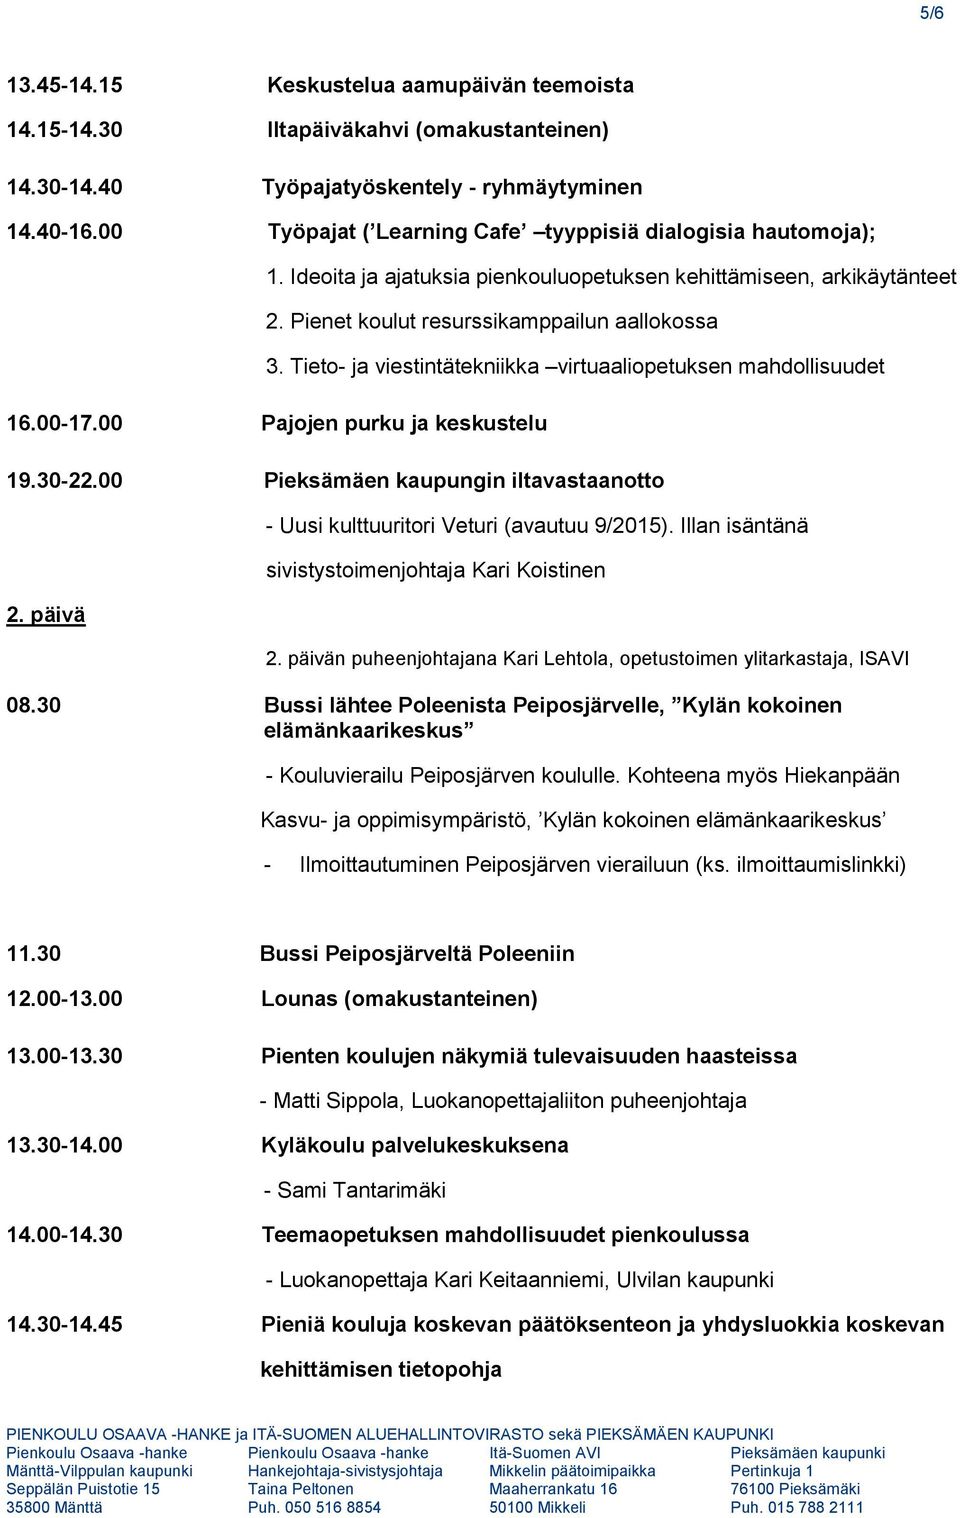 Tieto- ja viestintätekniikka virtuaaliopetuksen mahdollisuudet 16.00-17.00 Pajojen purku ja keskustelu 19.30-22.00 Pieksämäen kaupungin iltavastaanotto 2.